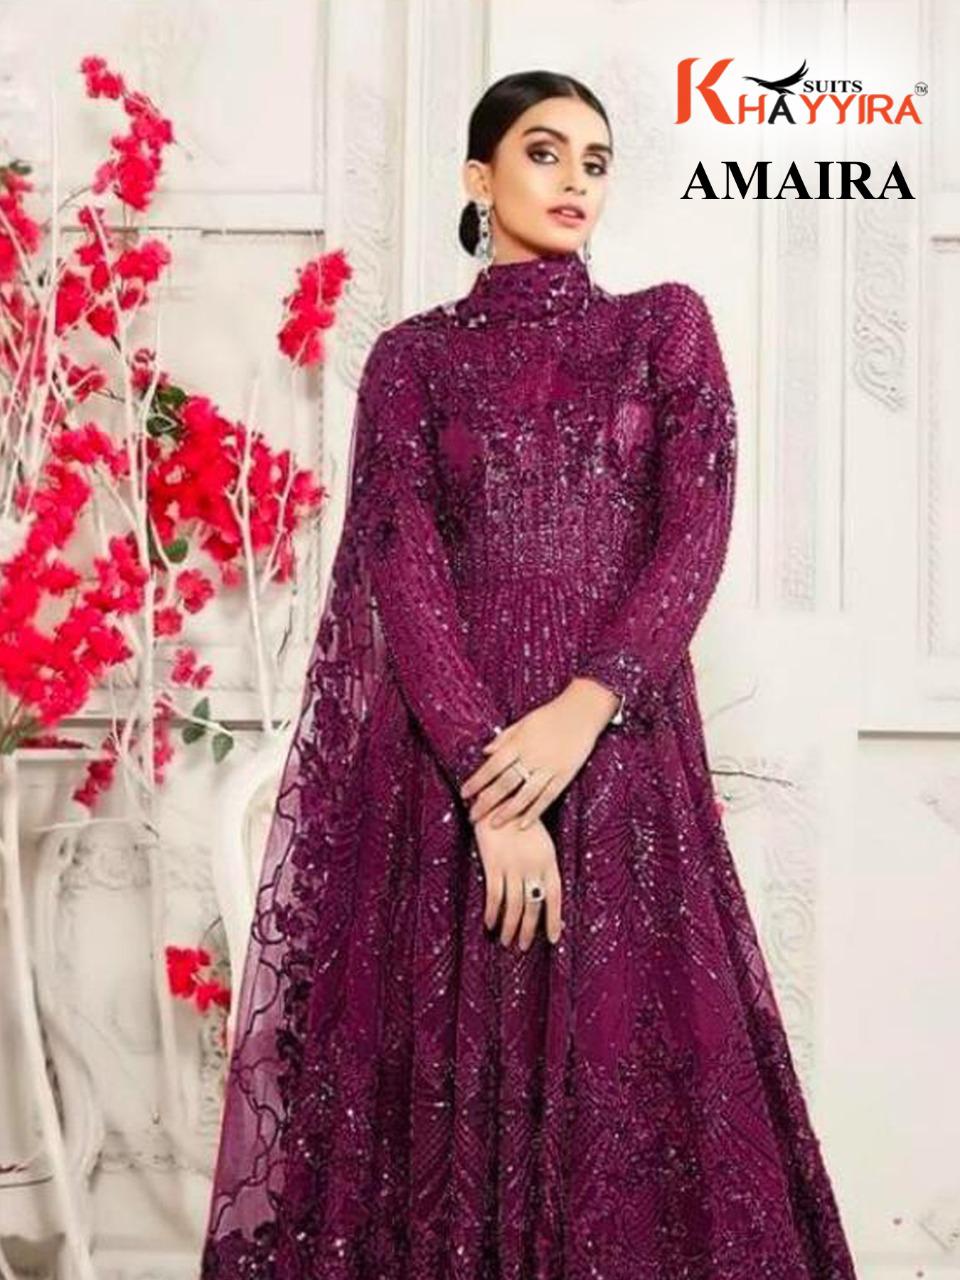 Khayyira Amaira 2000 Fancy Net With Embroidery Pakistani Salwar Suits  Catalog